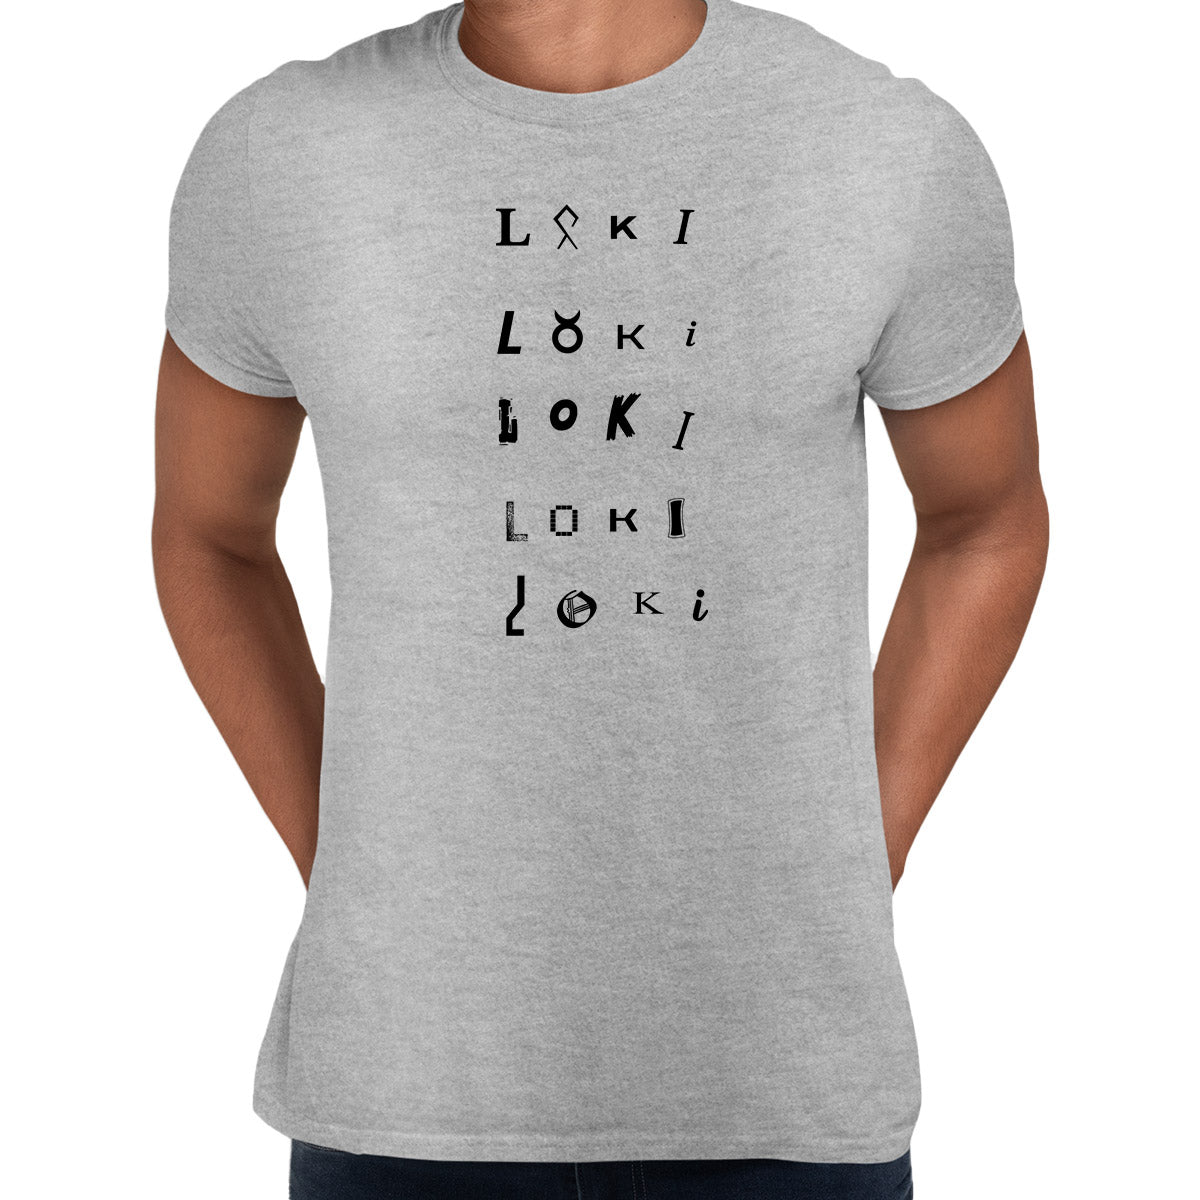 Loki TVA 2 Emblem Grey T-shirt 